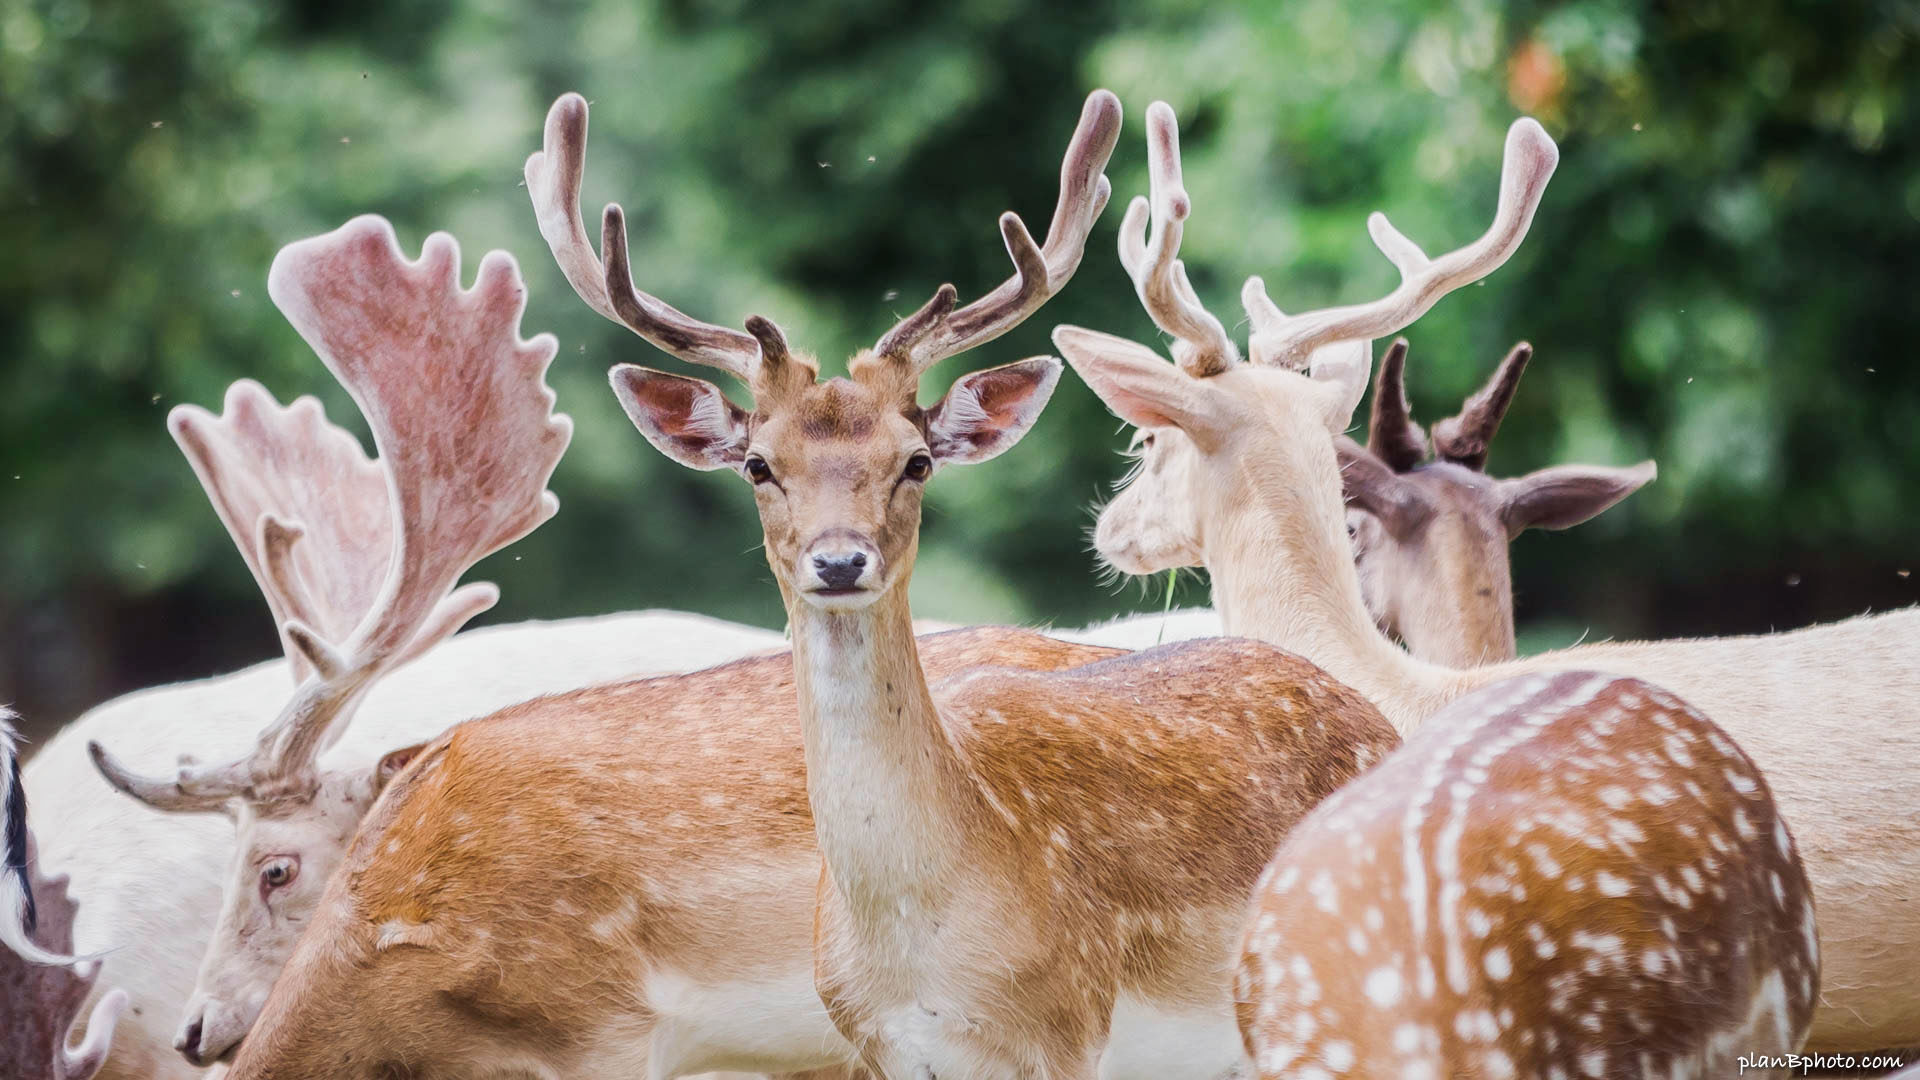 Herd of fallow deer in Bushy Park, London